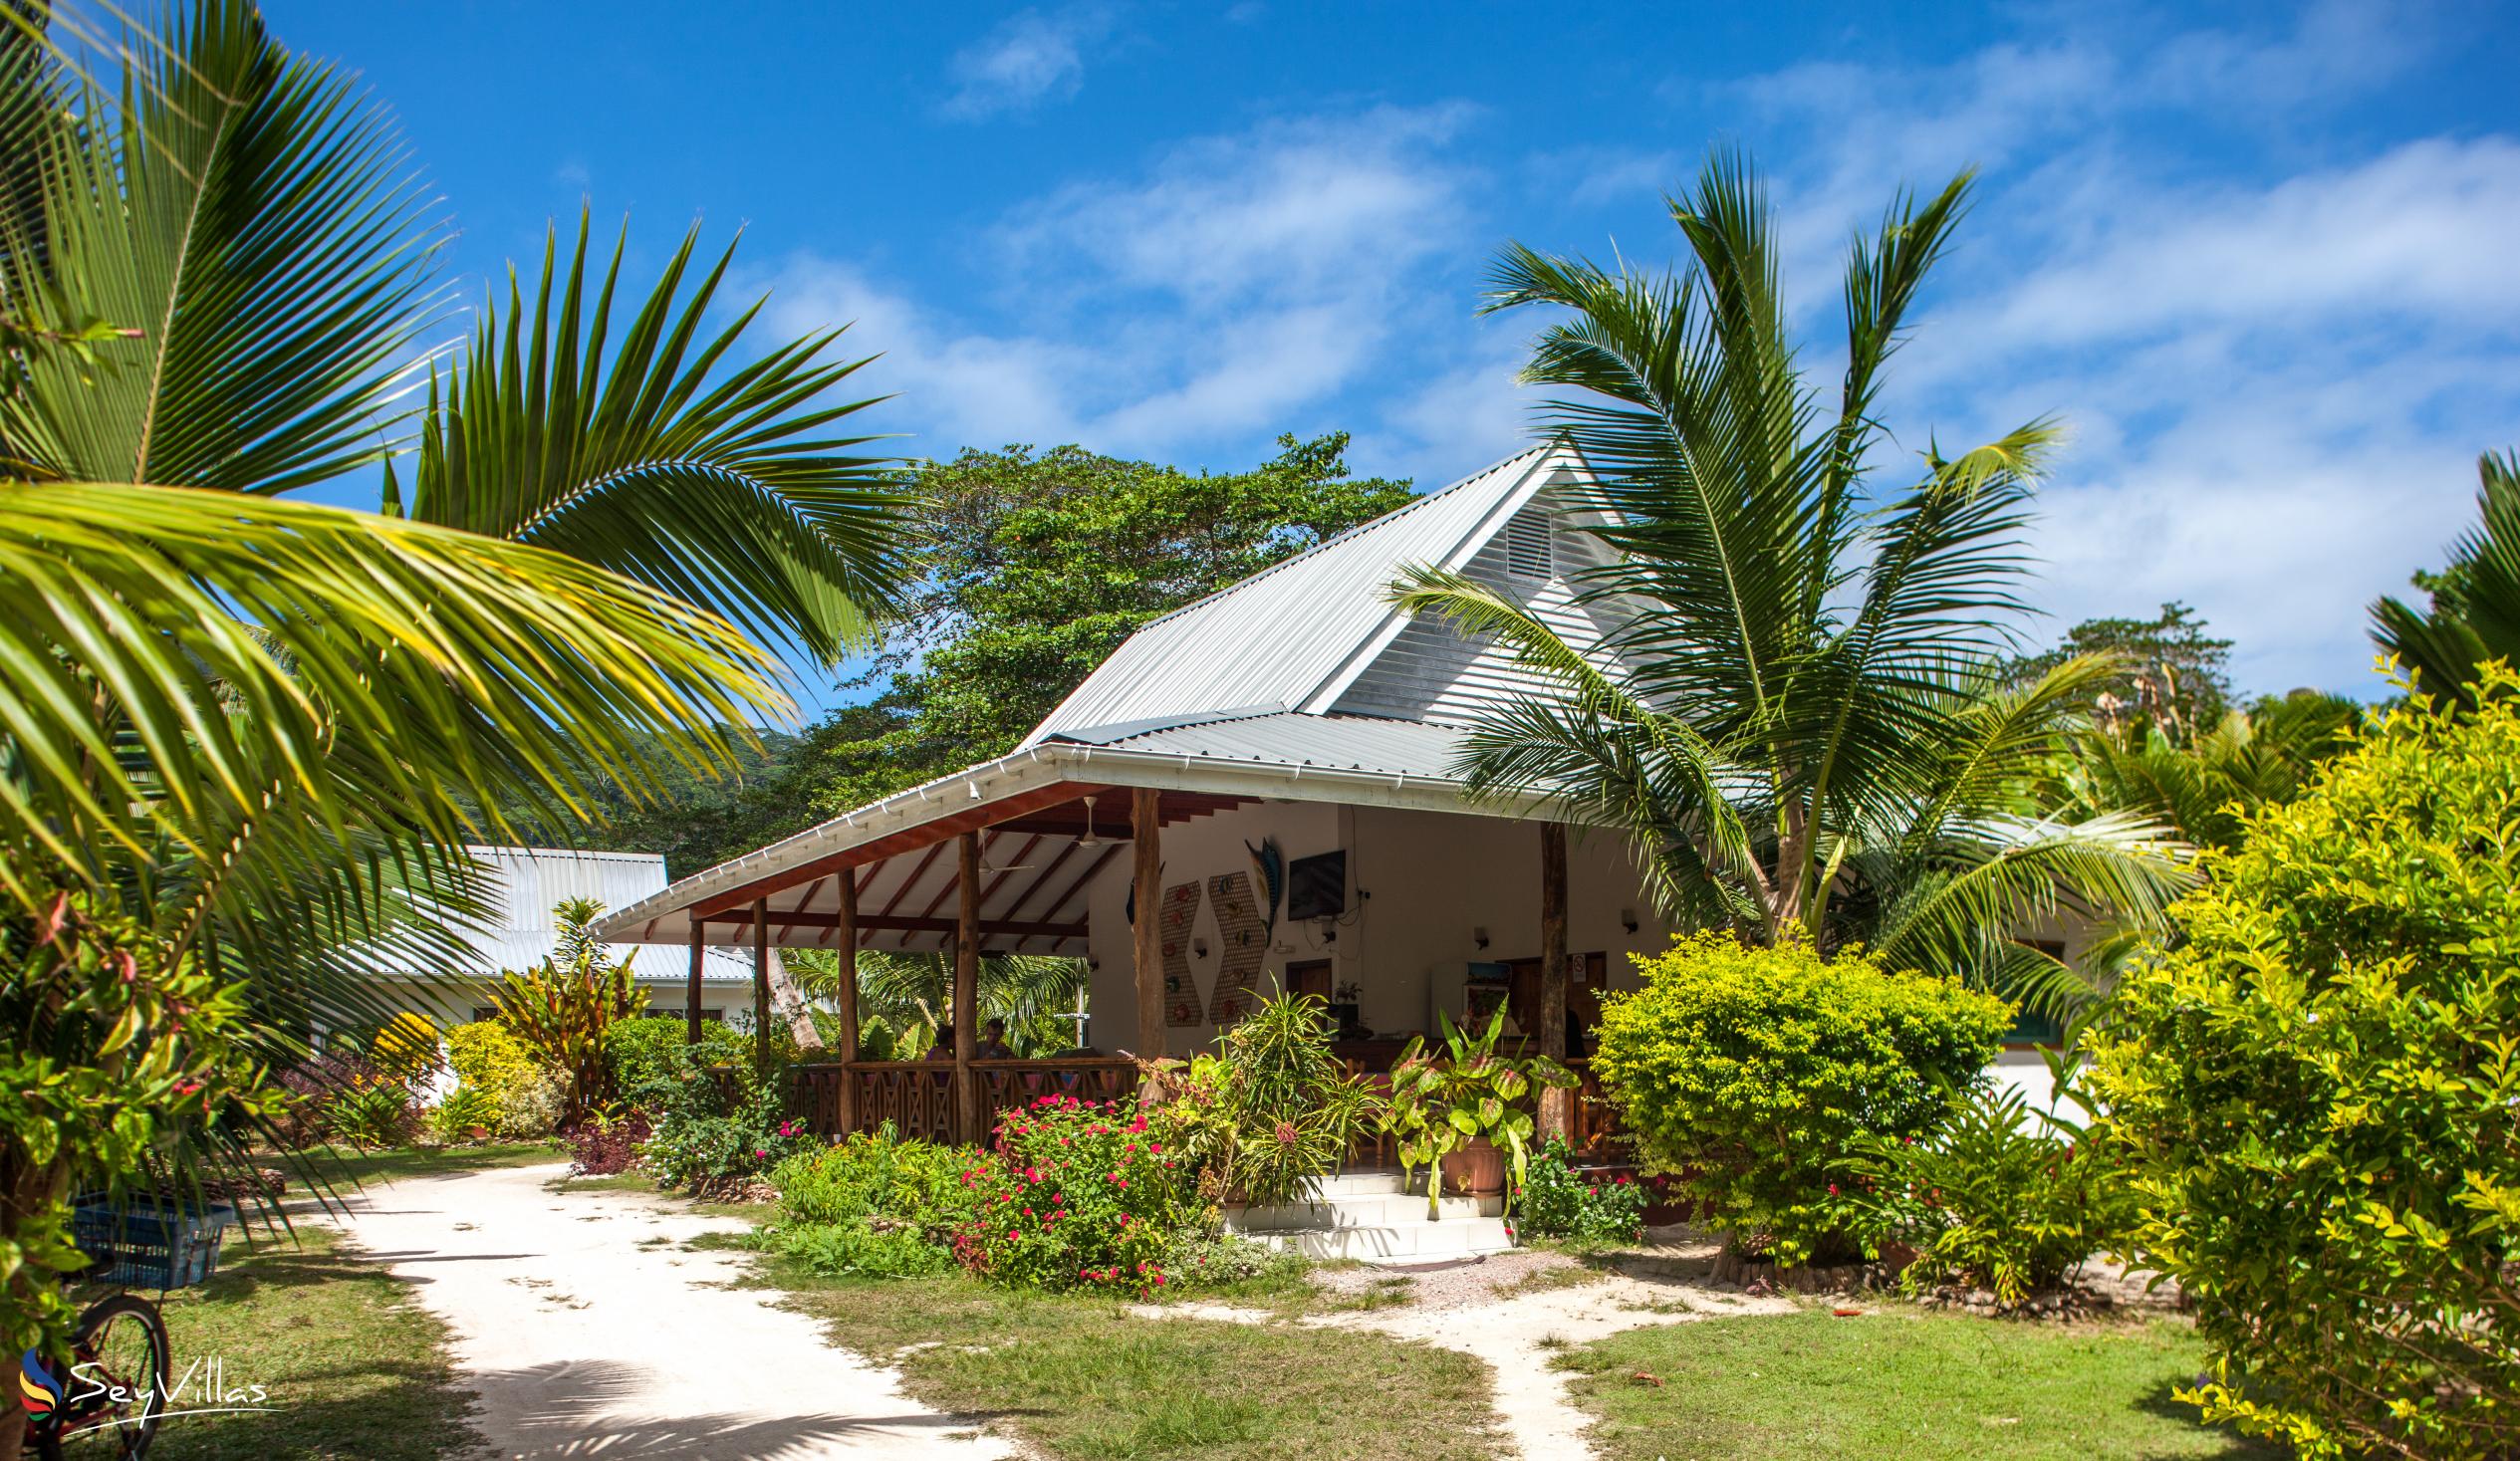 Foto 9: Villa Veuve - Esterno - La Digue (Seychelles)